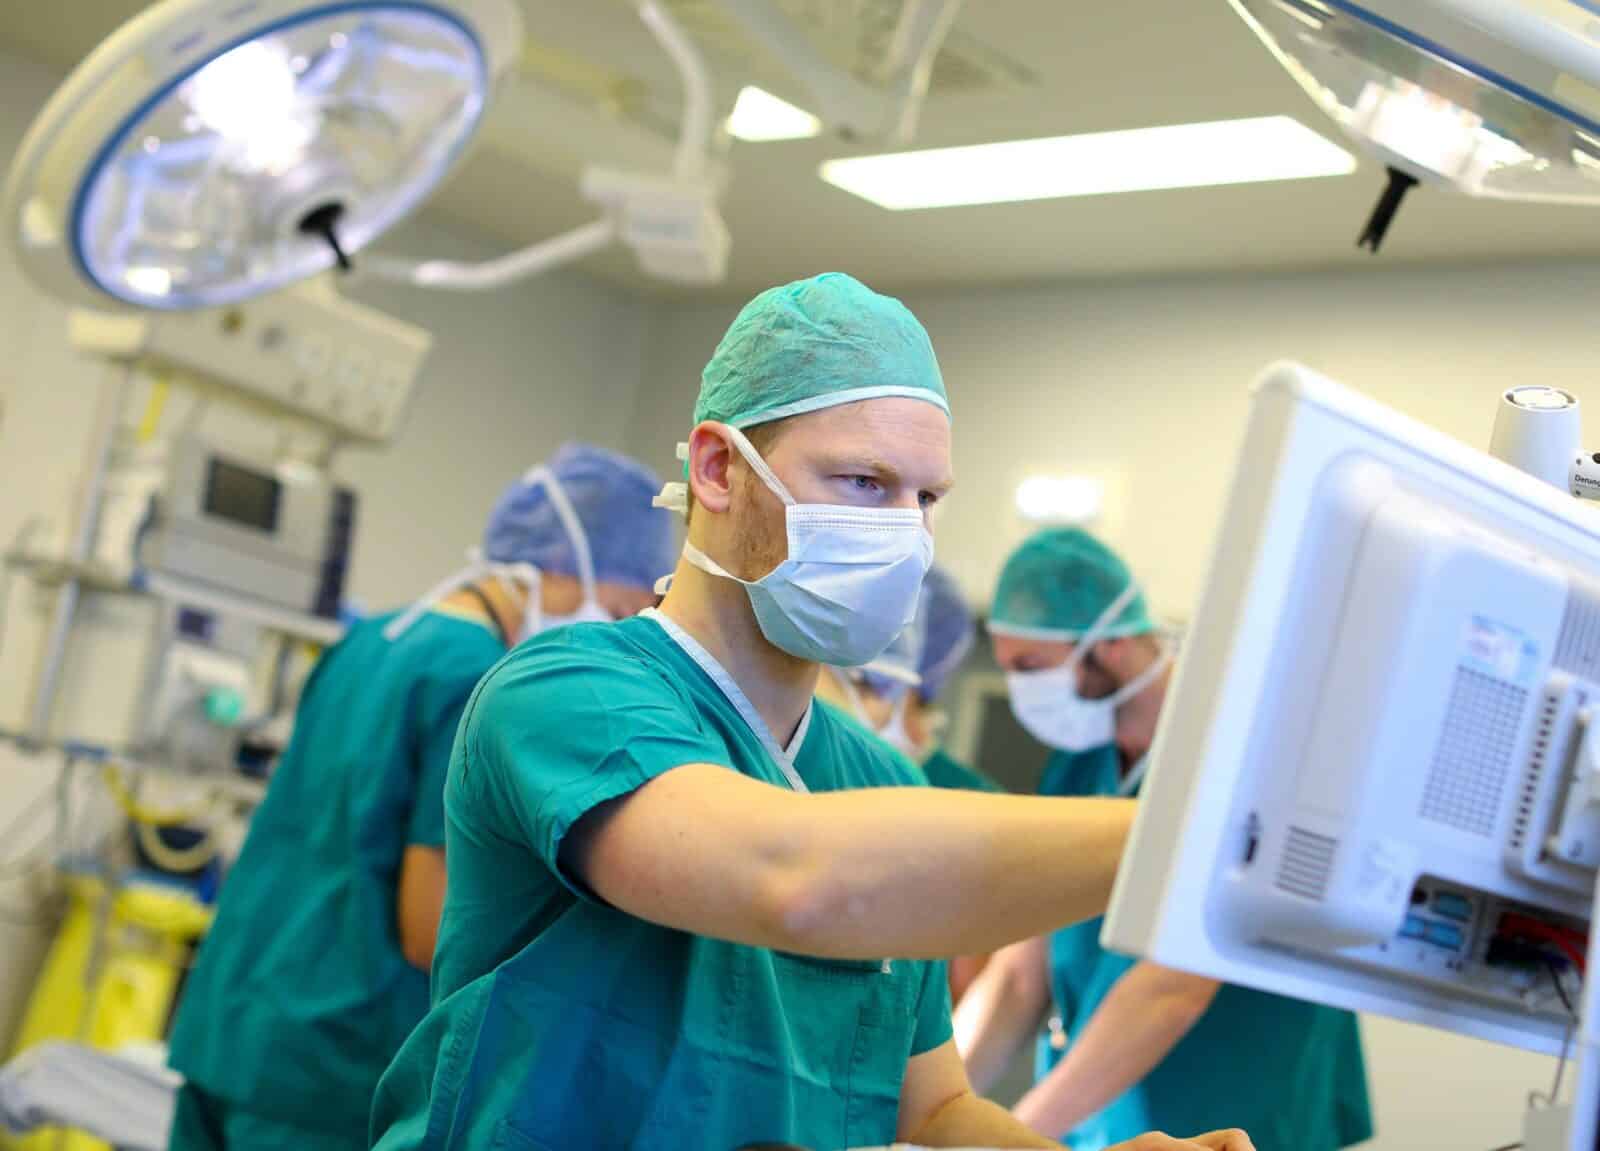 أطباء دبي يزيلون ورم ليفي ضخم من امرأة بعد إجهاضها - خبر